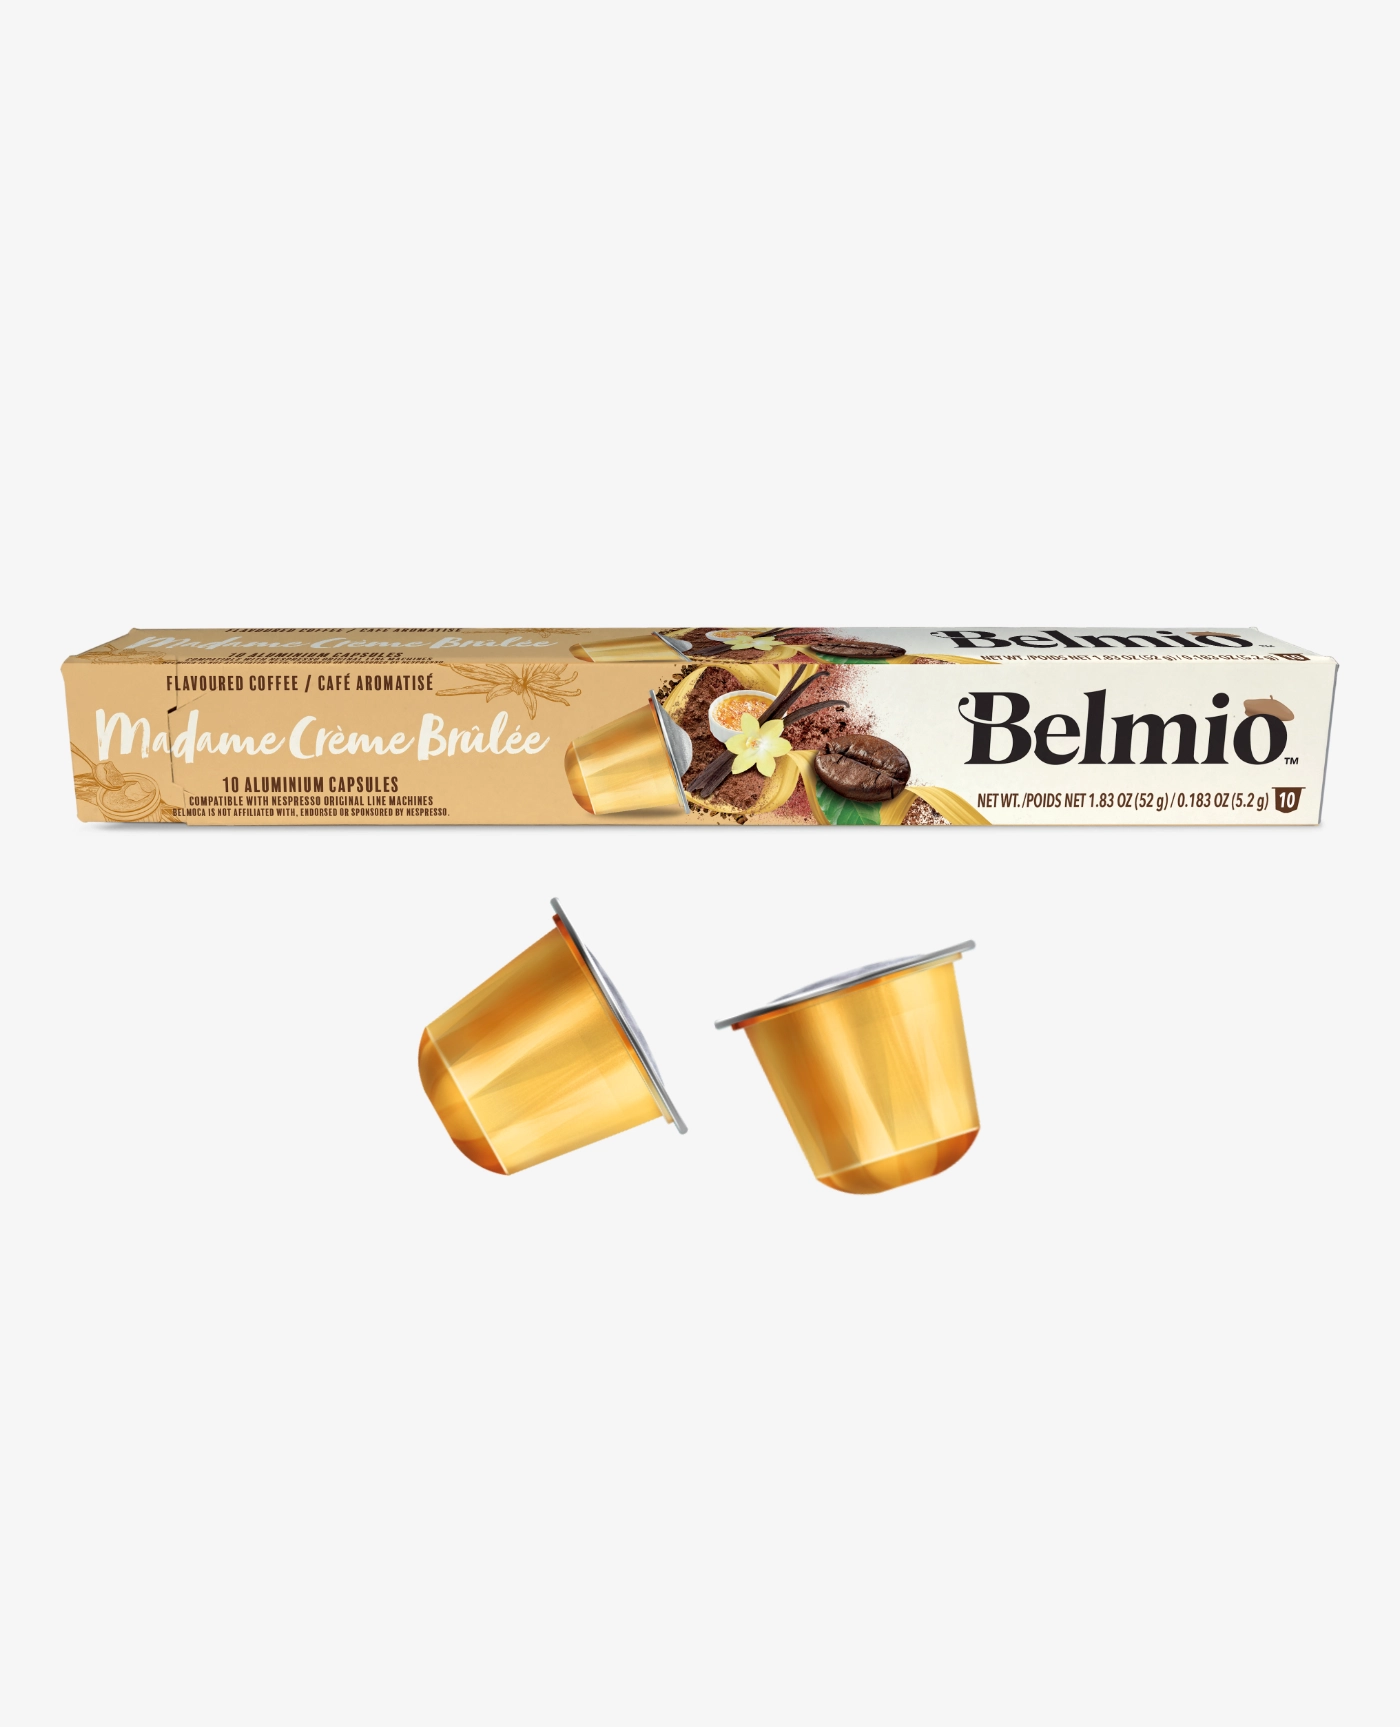 Belmio Creme Brulee Kapsułki Nespresso